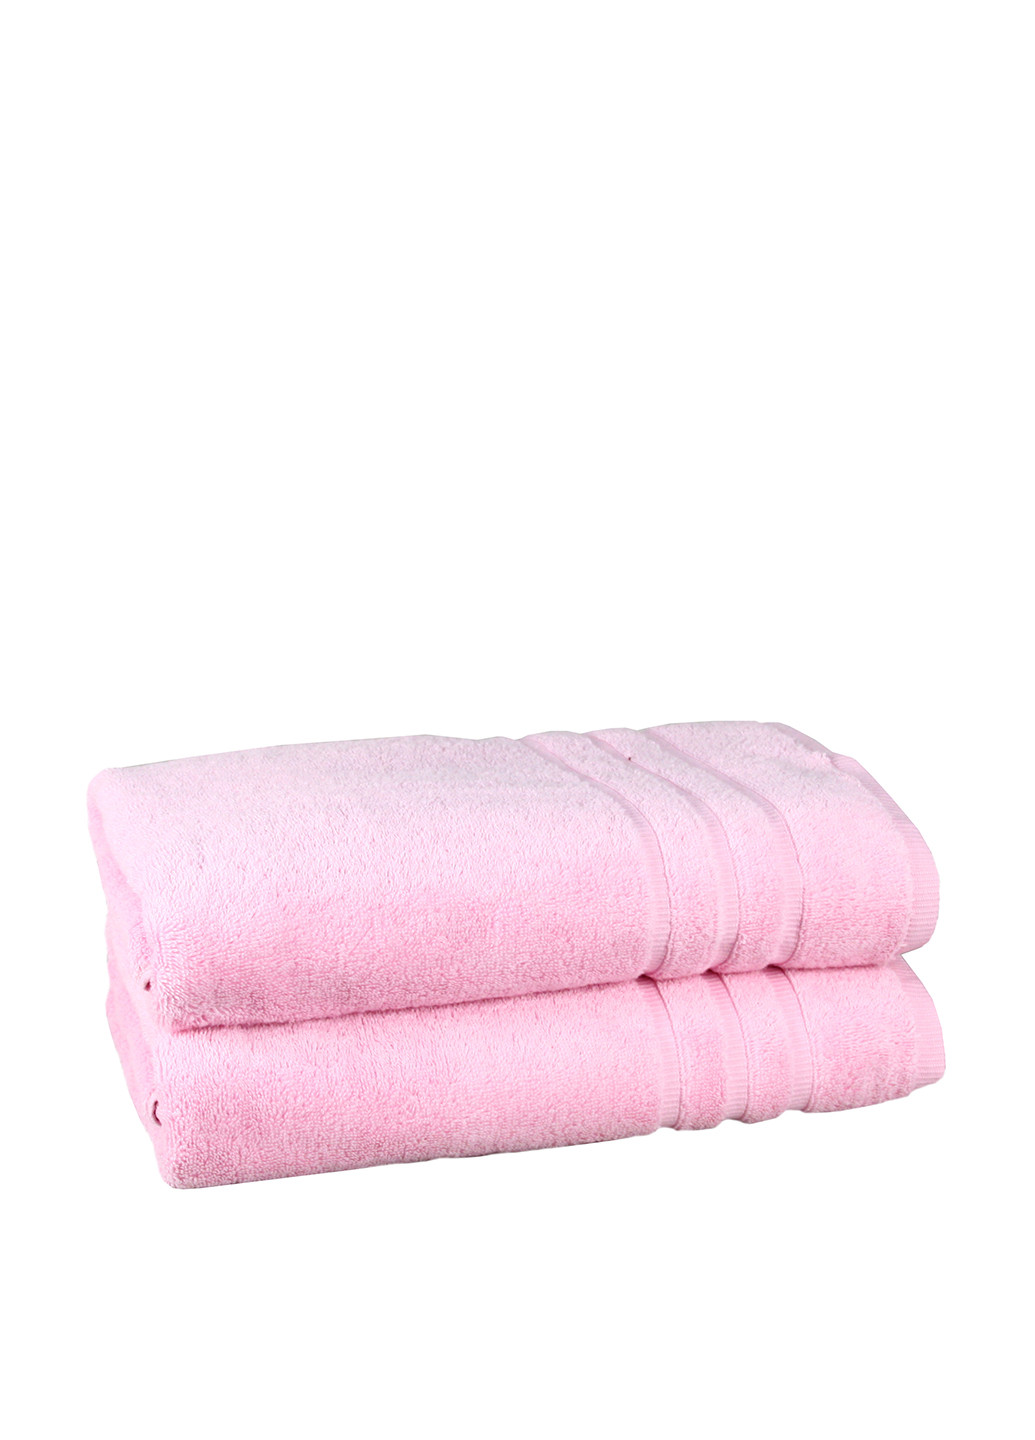 Maisonette рушник (1 шт.), 70х140 см однотонний рожевий виробництво - Туреччина